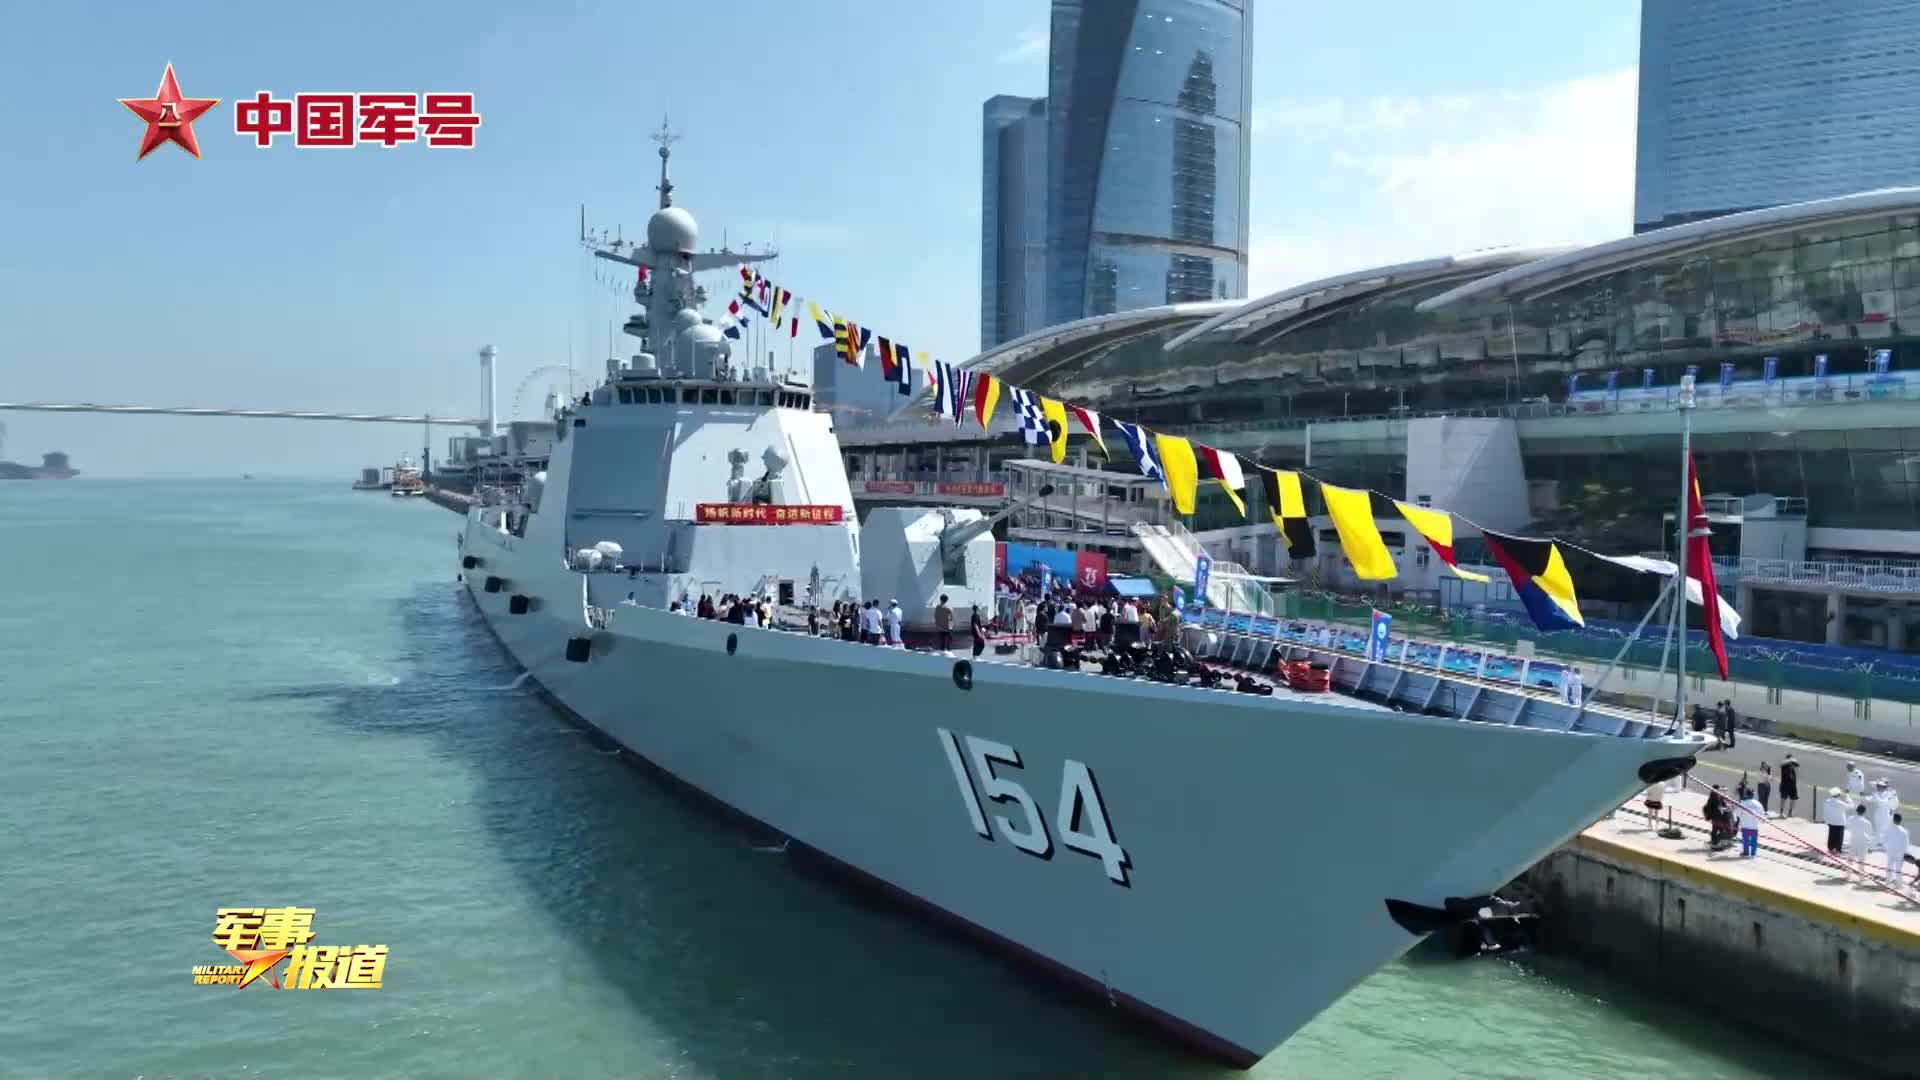 人民海军成立75周年丨多艘战舰在命名城市开展舰艇开放活动- 全民国防 